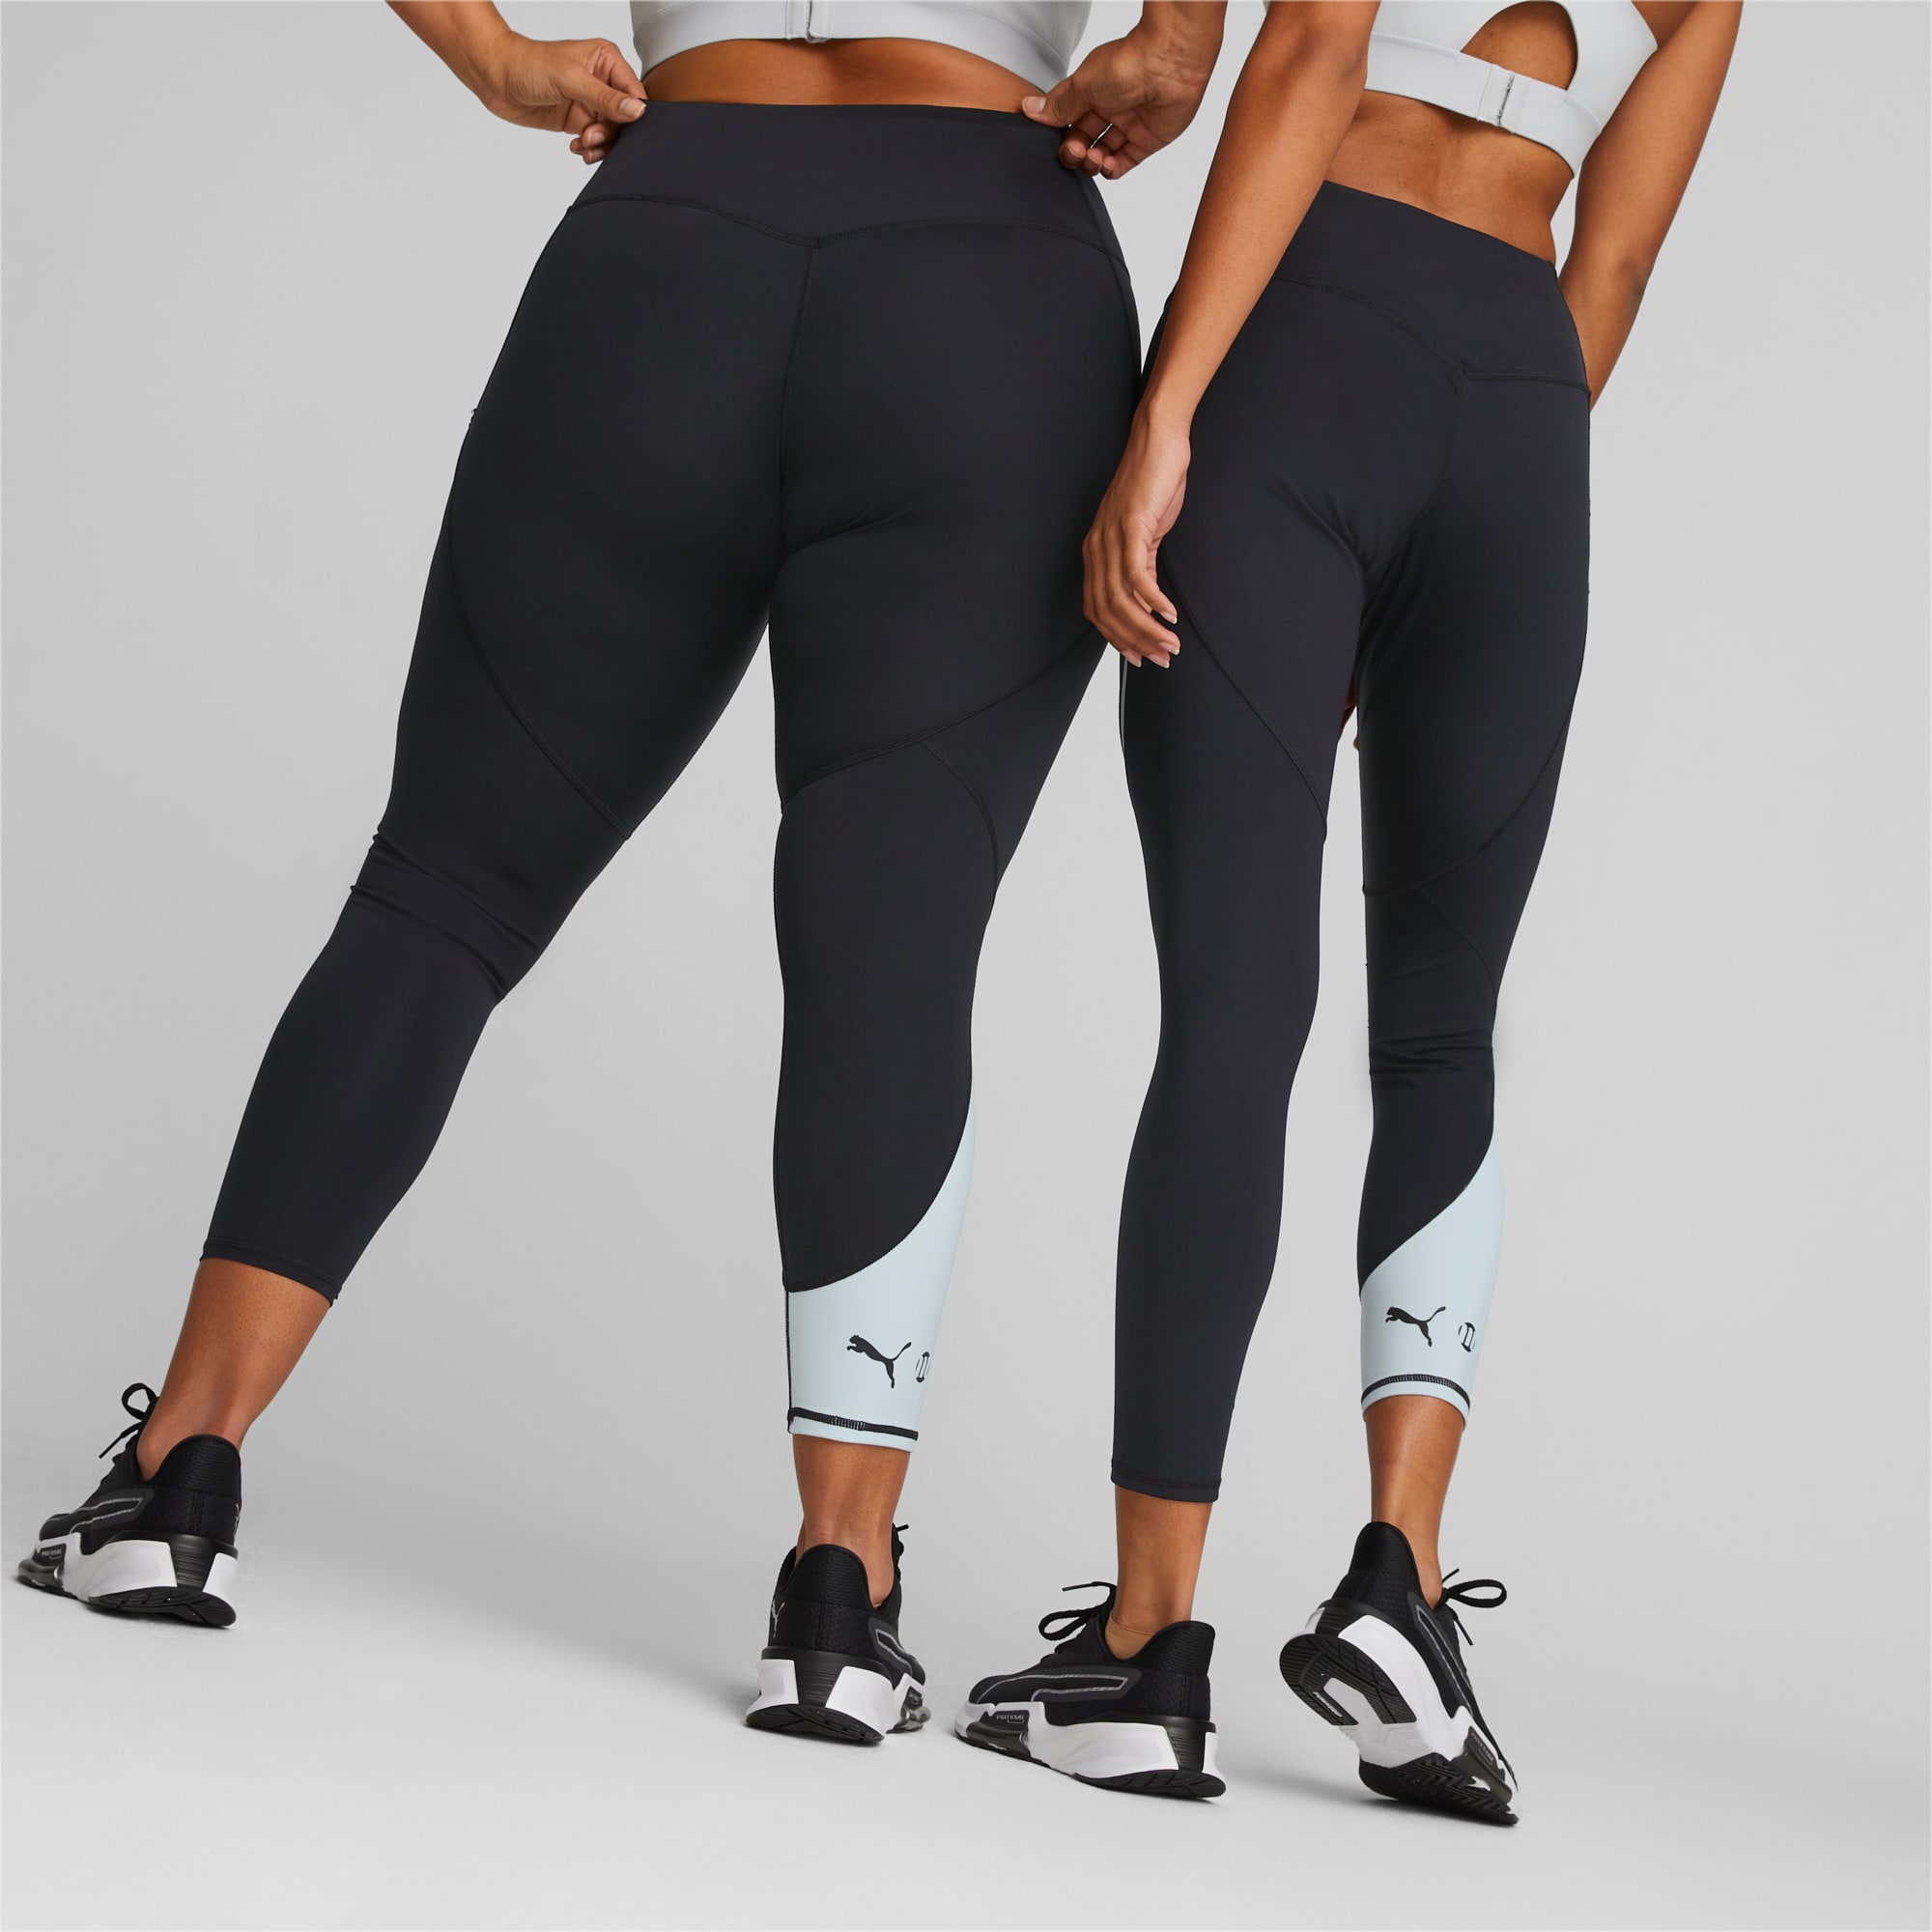 PUMA X Modibodi 7/8 Leggings Women, Black/Grey, Size L, Clothing